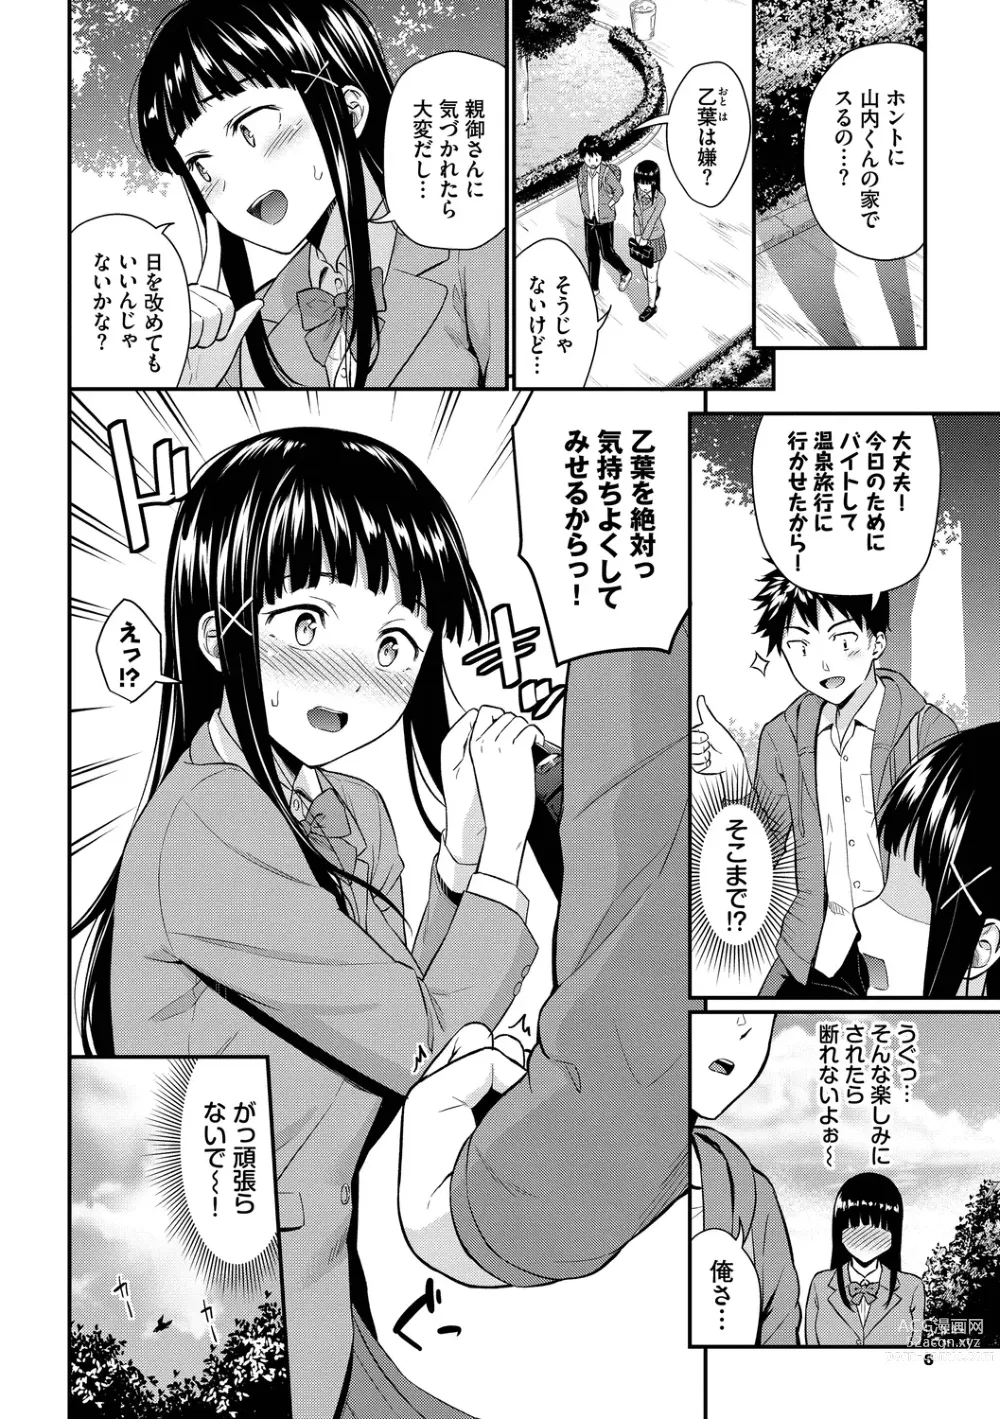 Page 6 of manga Hajirai Limit